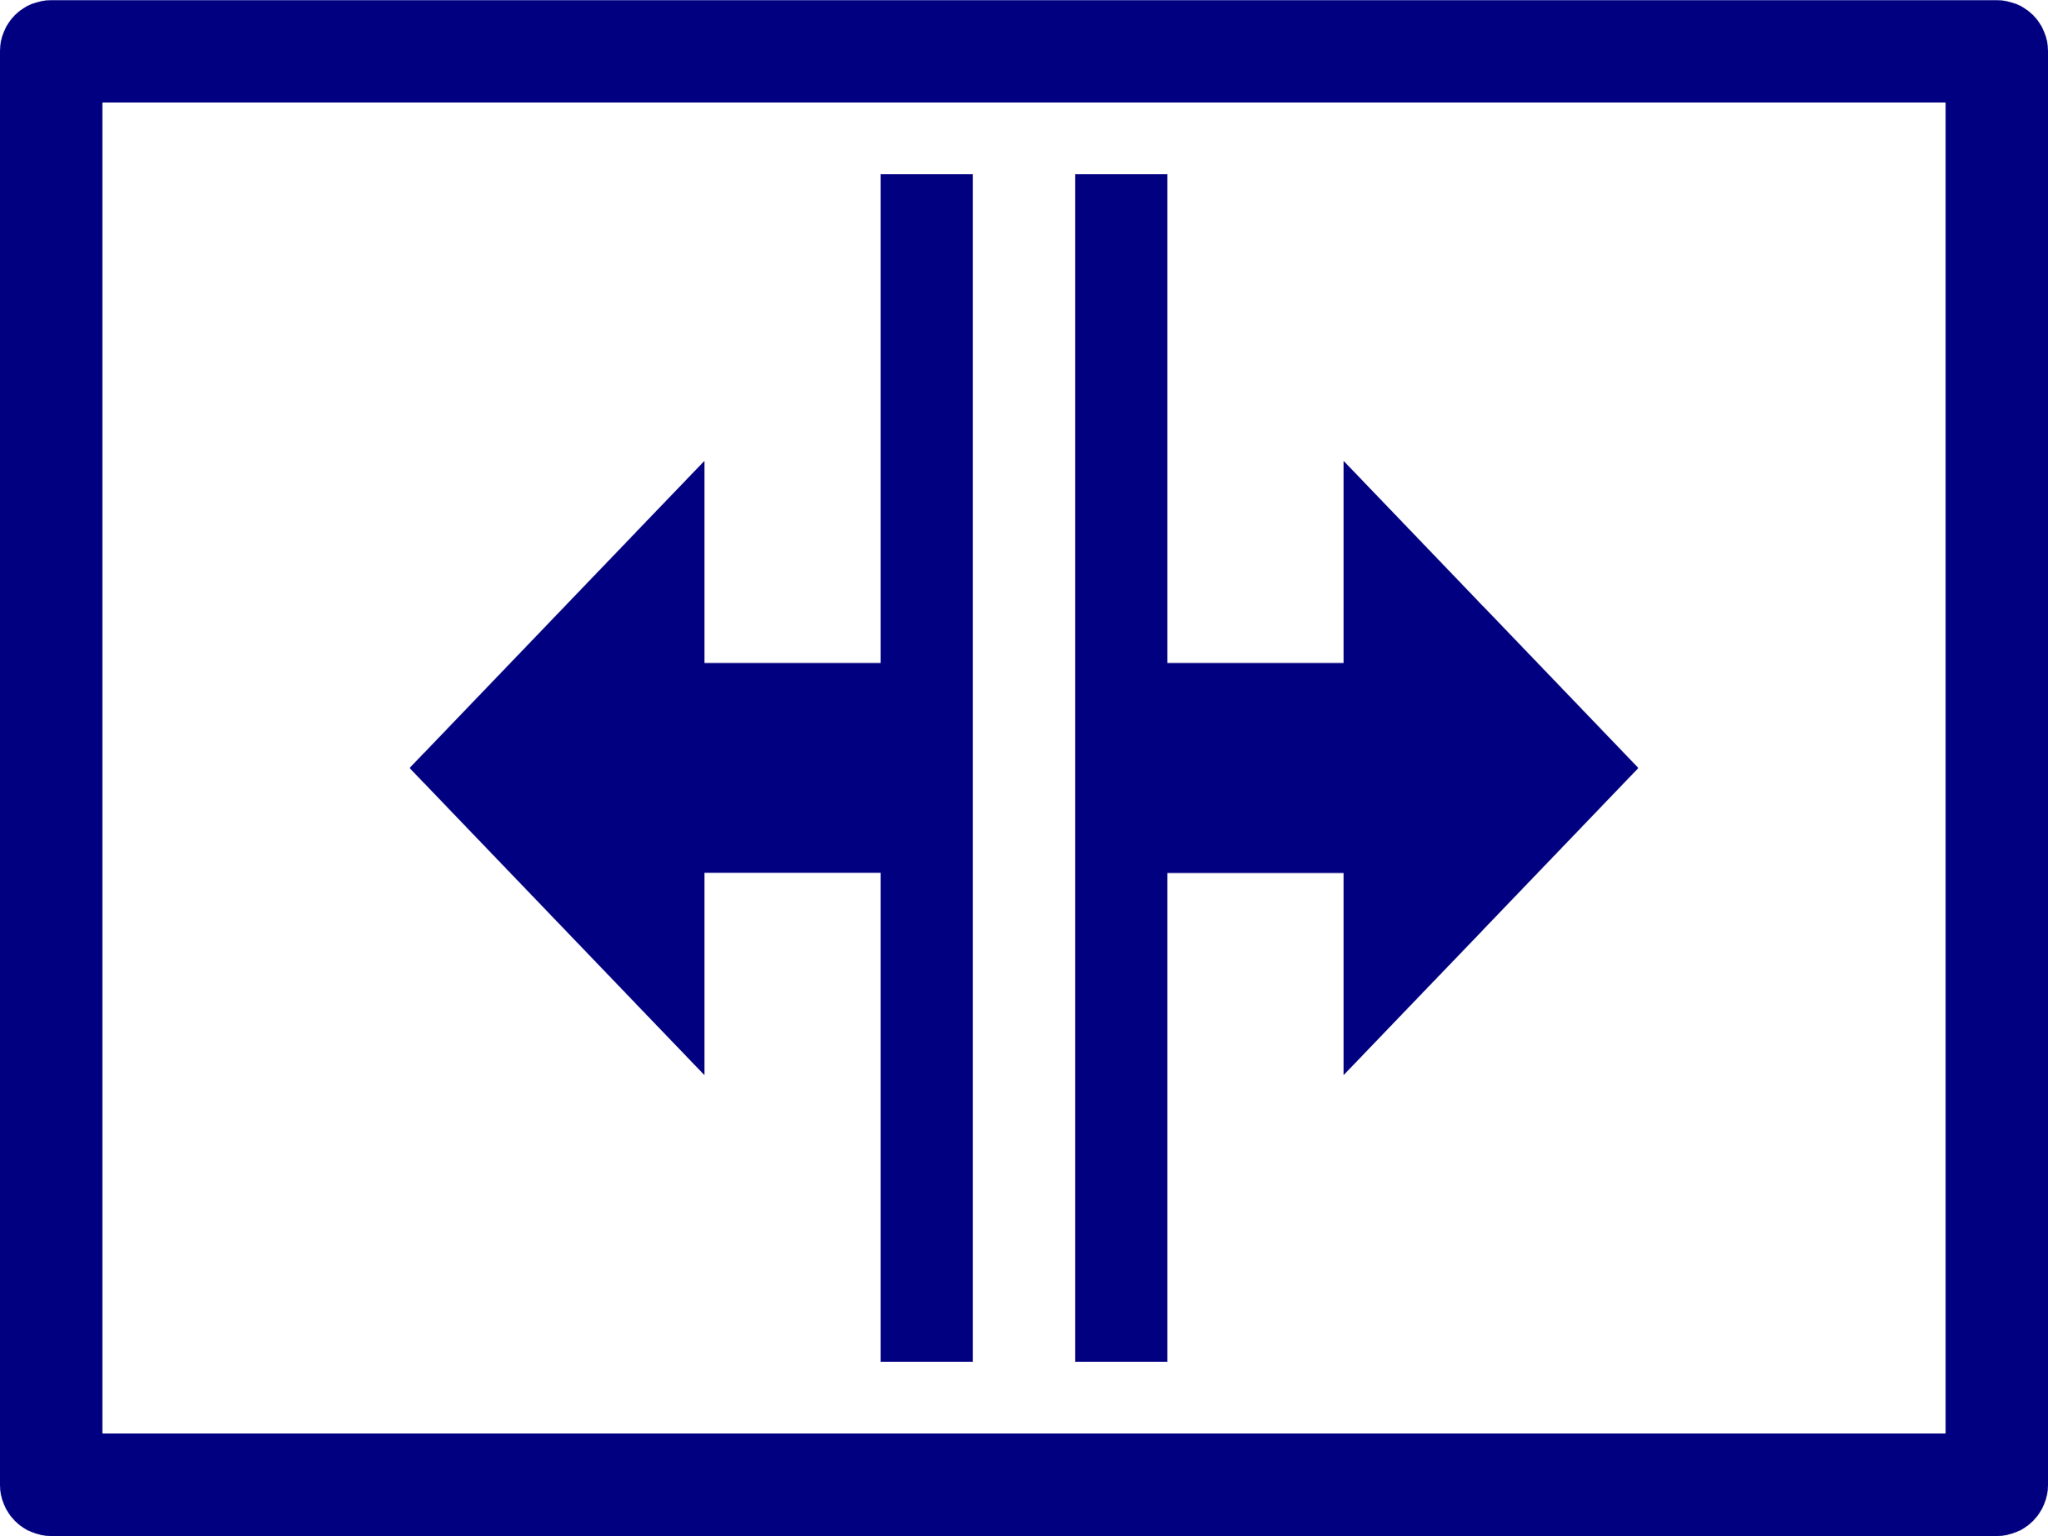 screen split horizontal icon